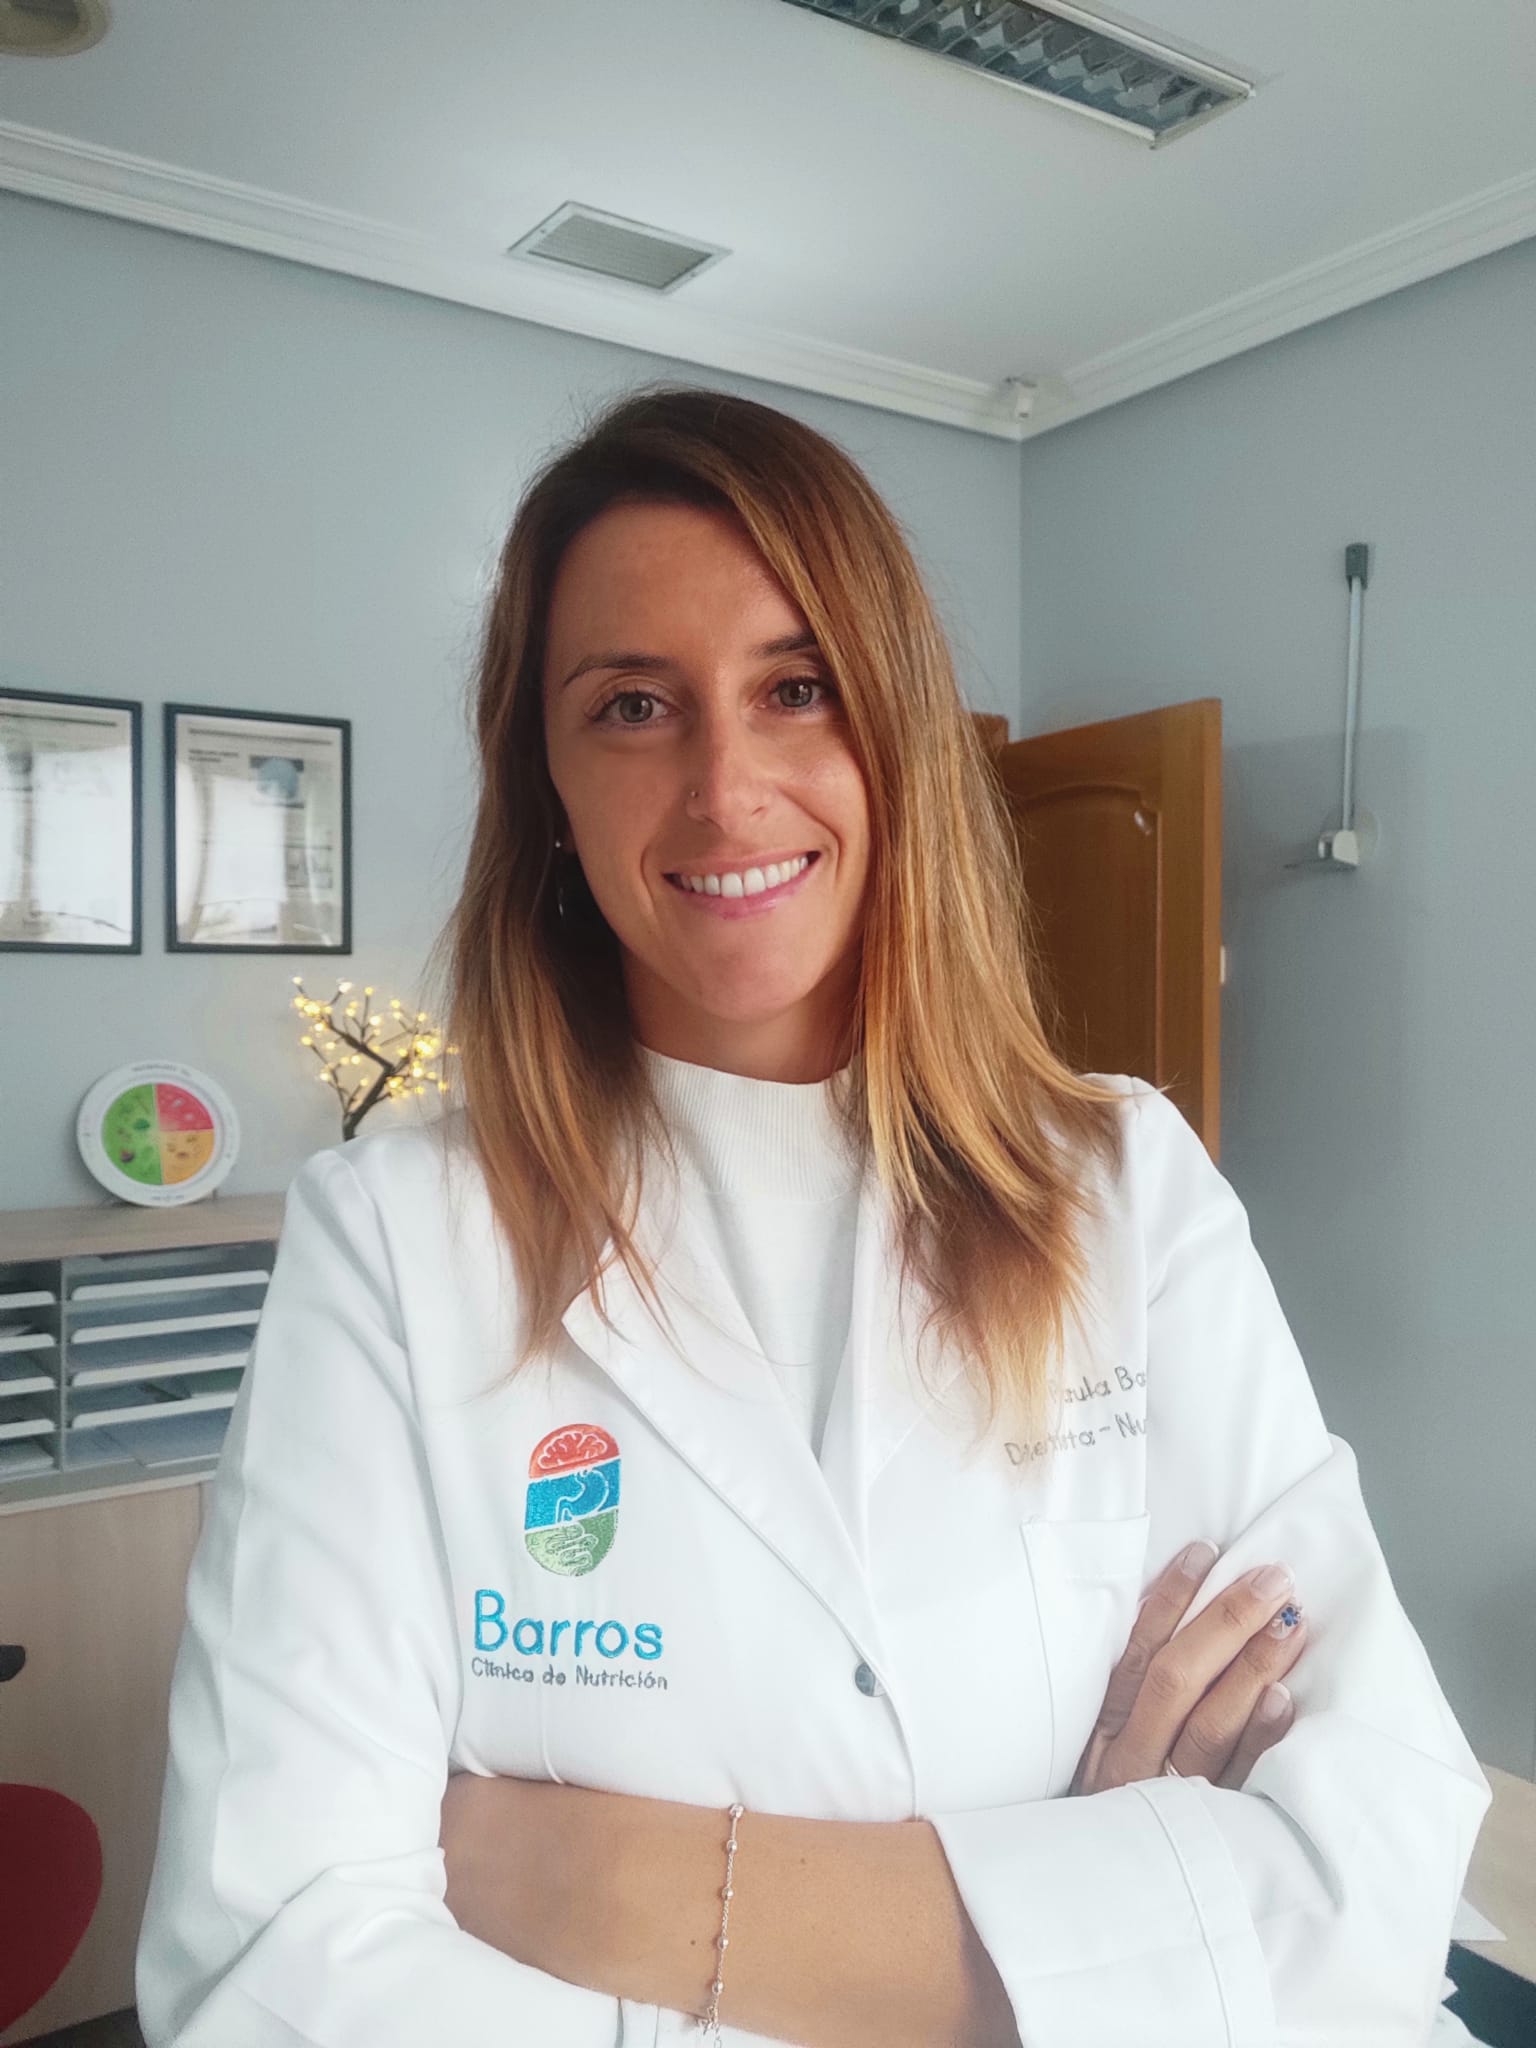 Paula Barros: Clínica de nutrición en Oviedo